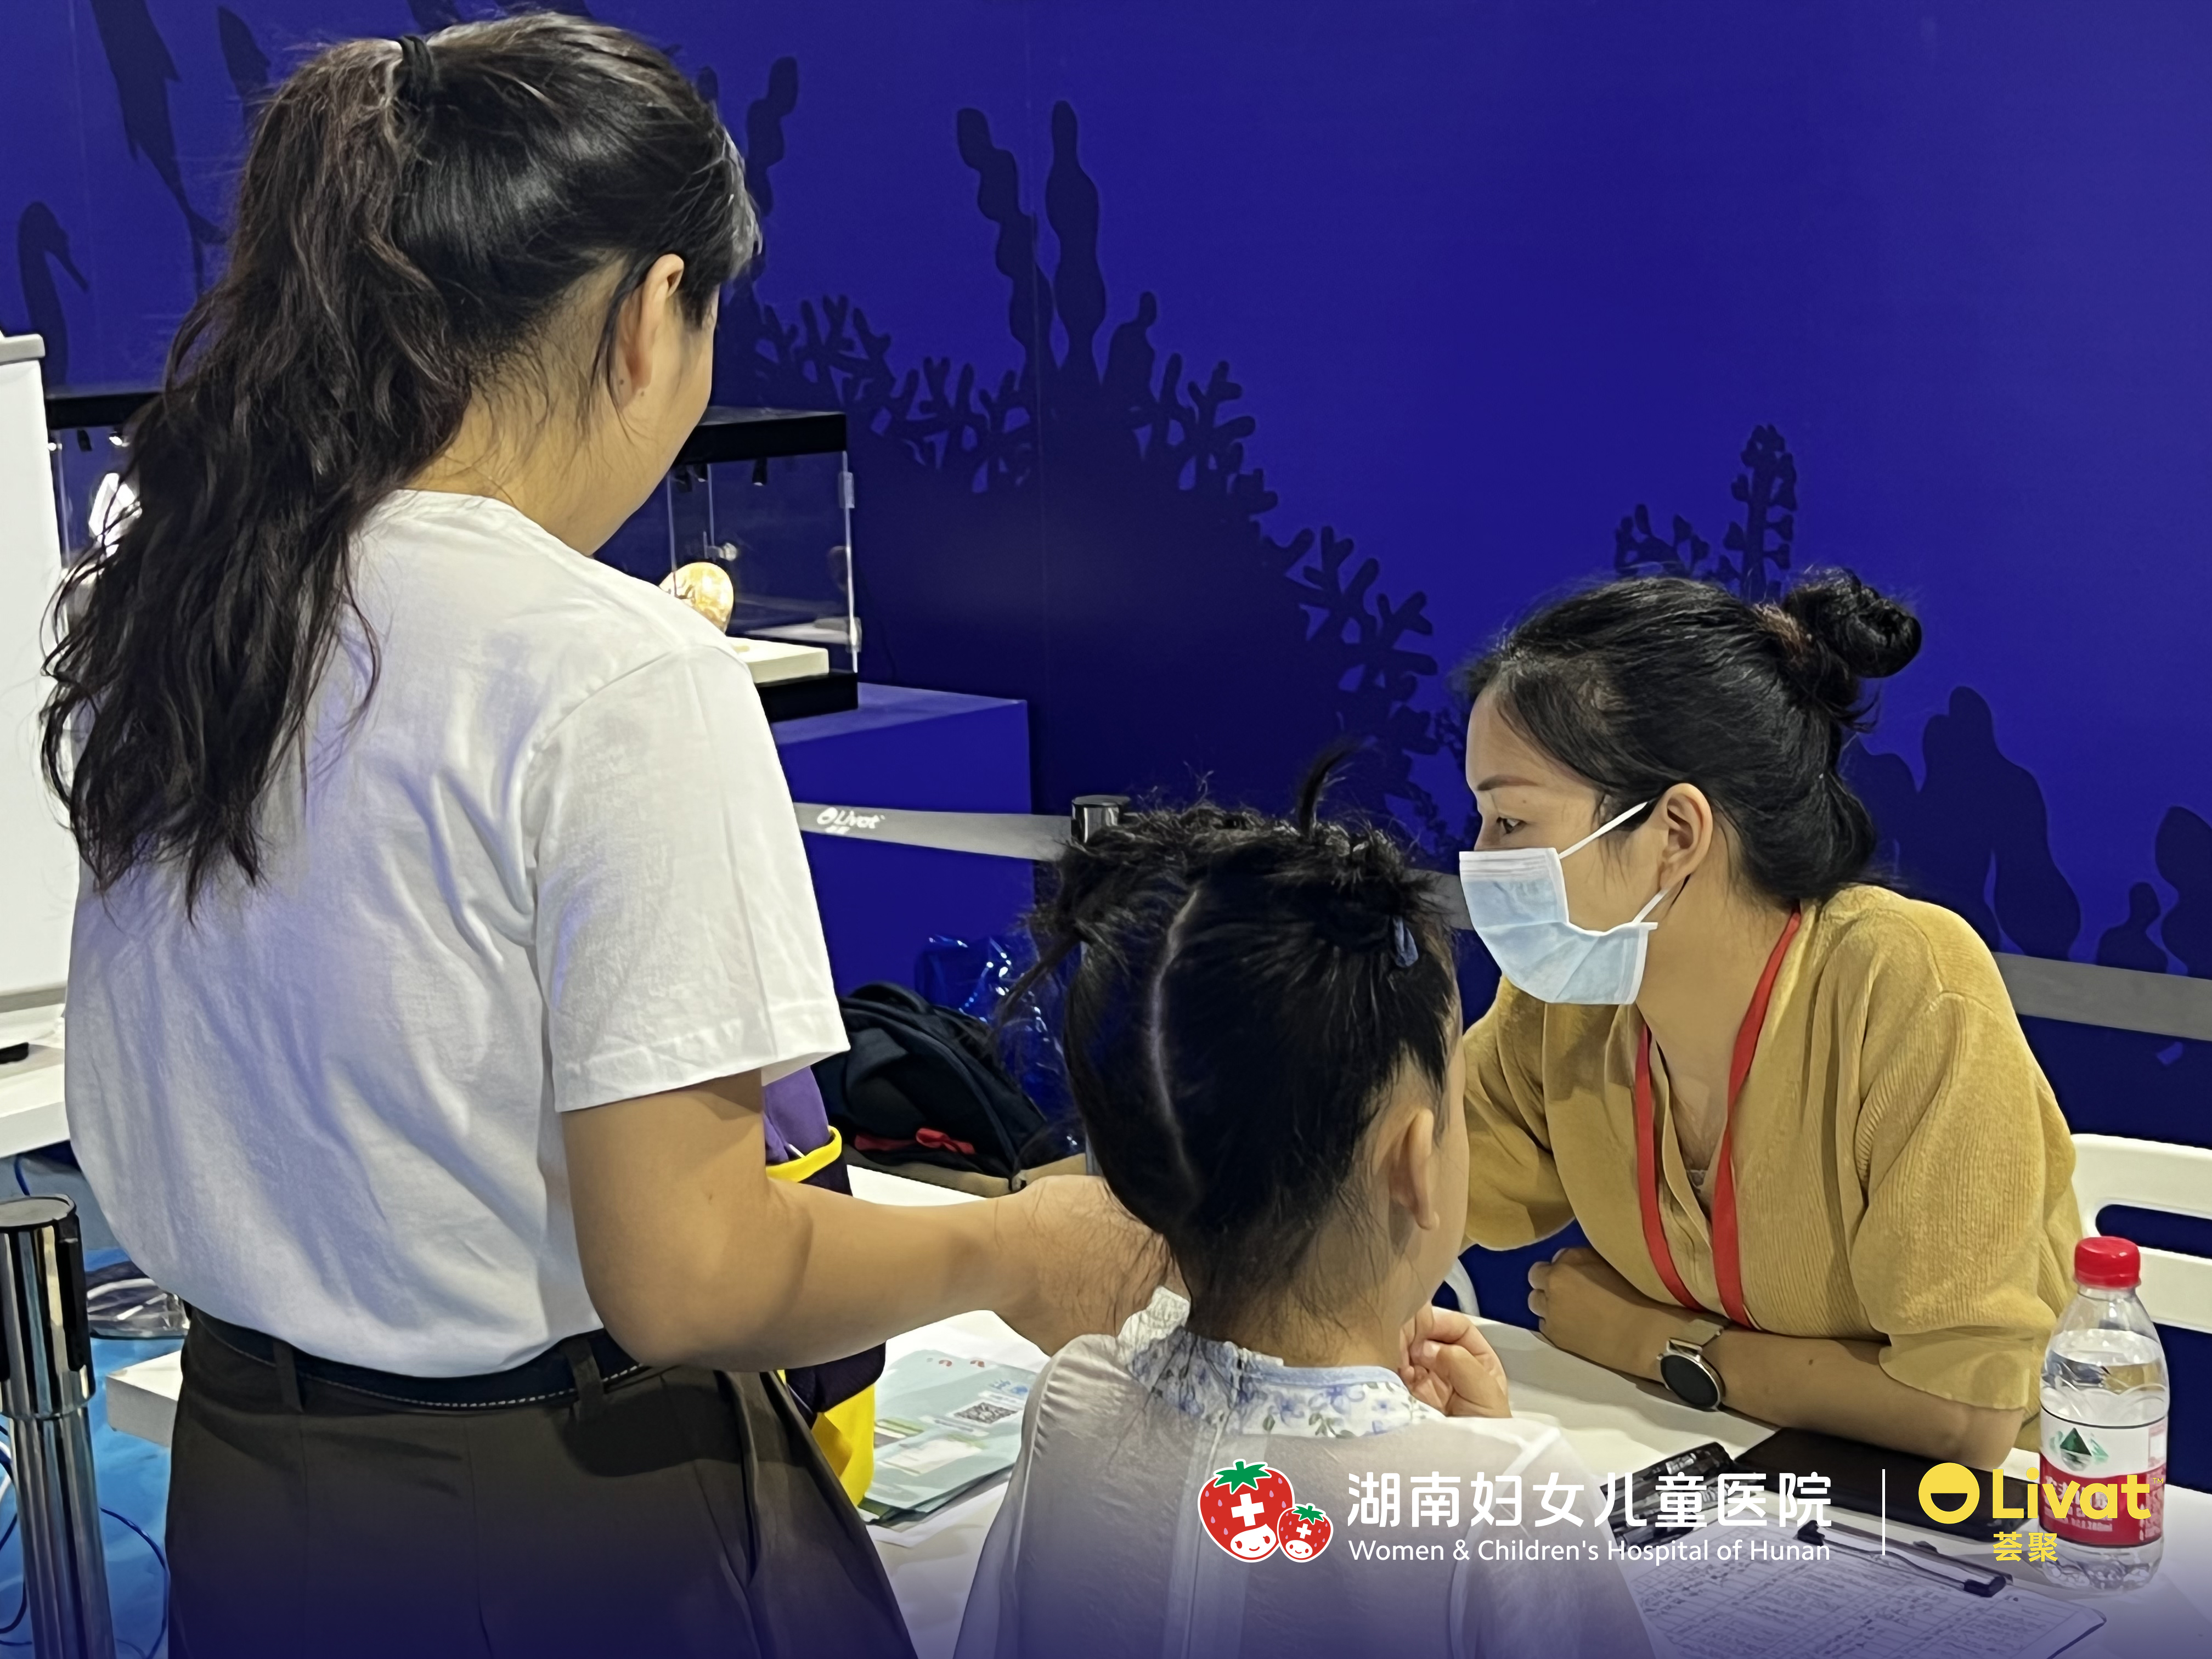 湖南妇女儿童医院联合长沙荟聚免费骨龄检测公益活动助力儿童成长